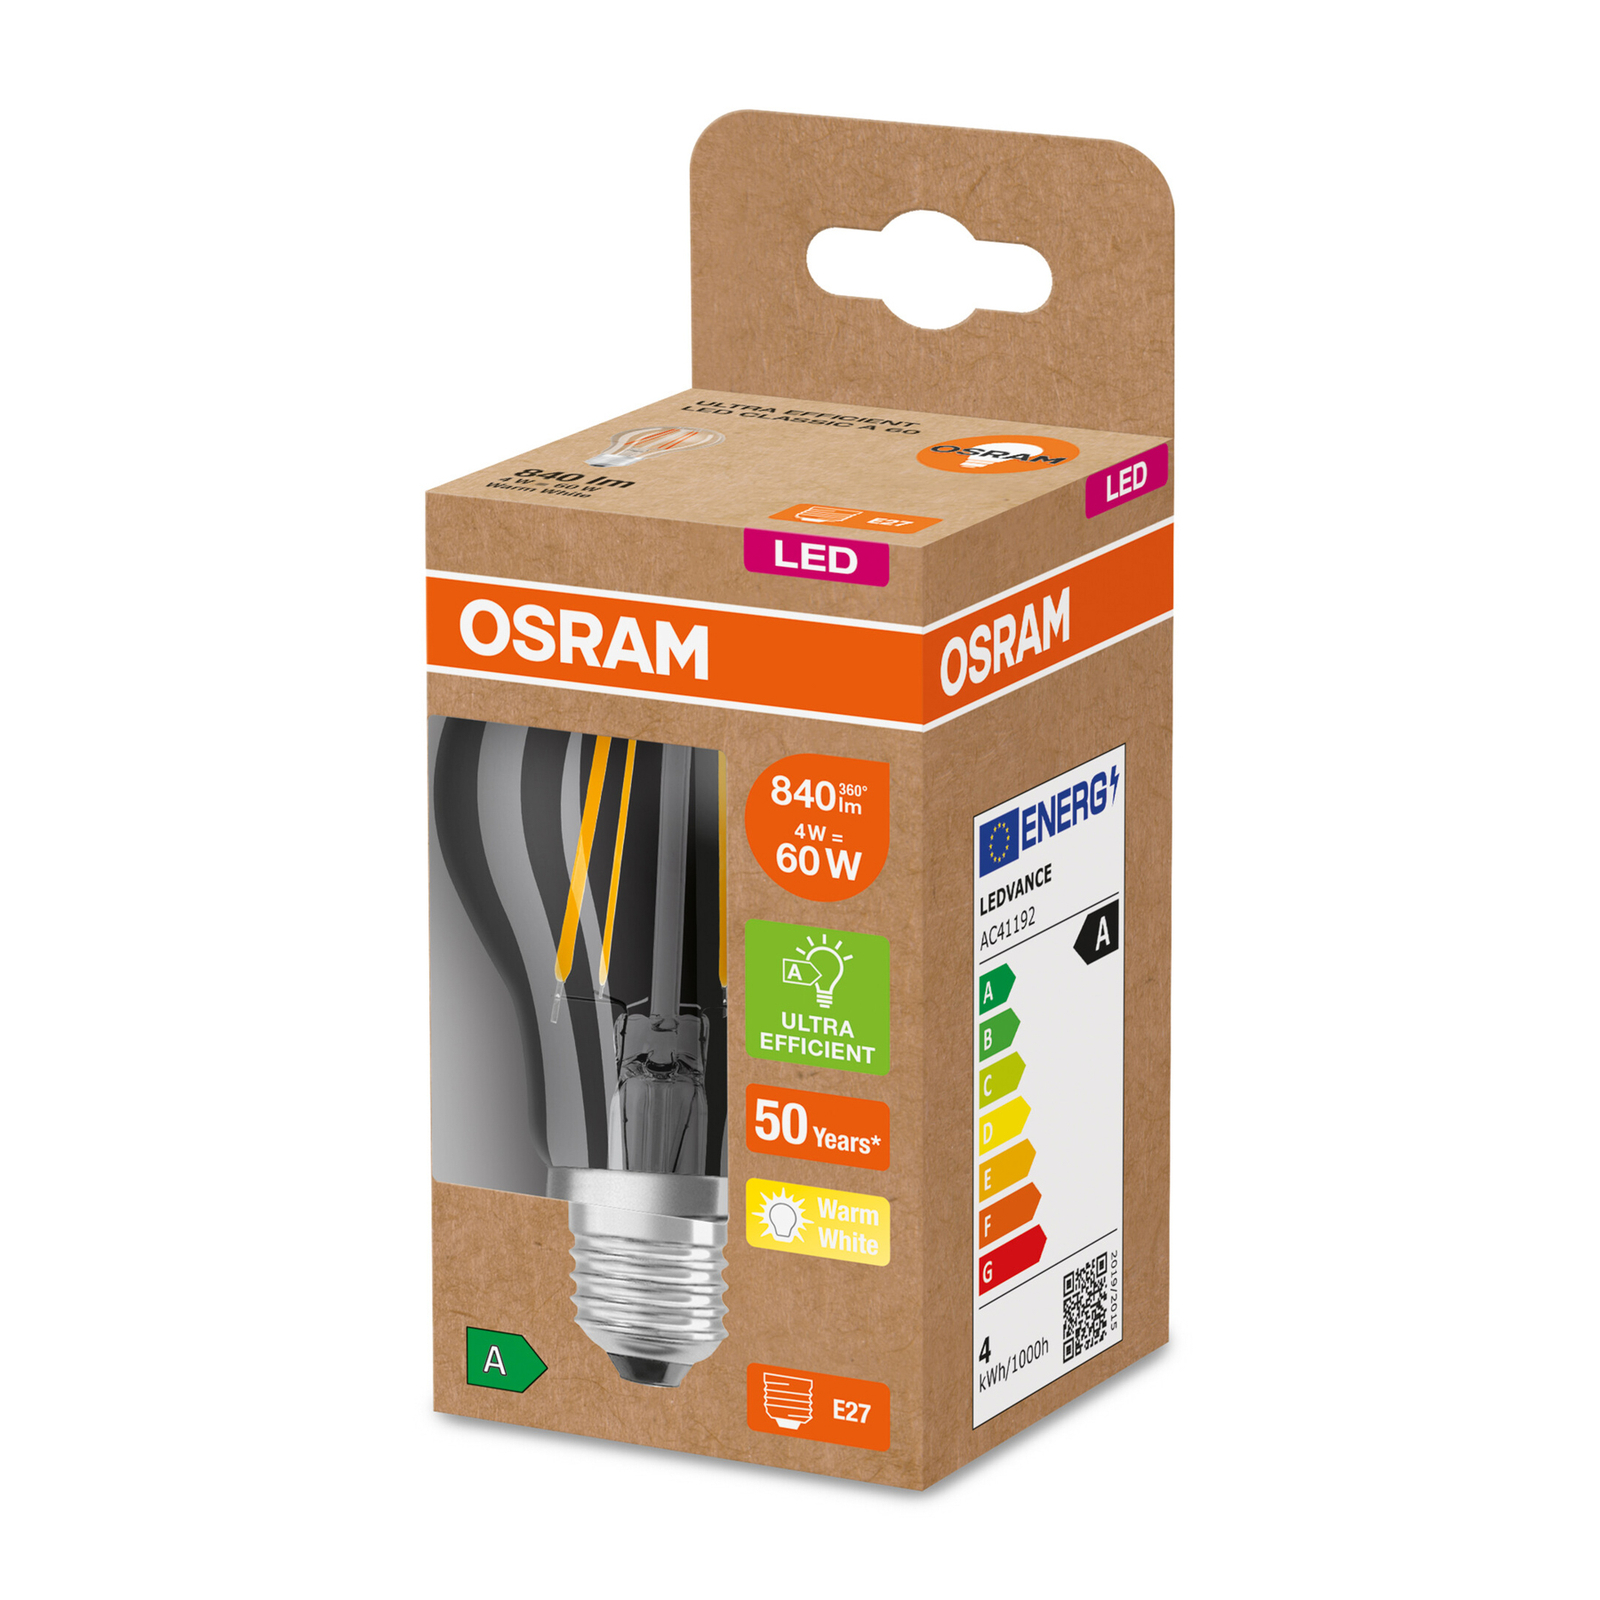 OSRAM LED lámpa E27 A60 4W 840lm 3,000K világos